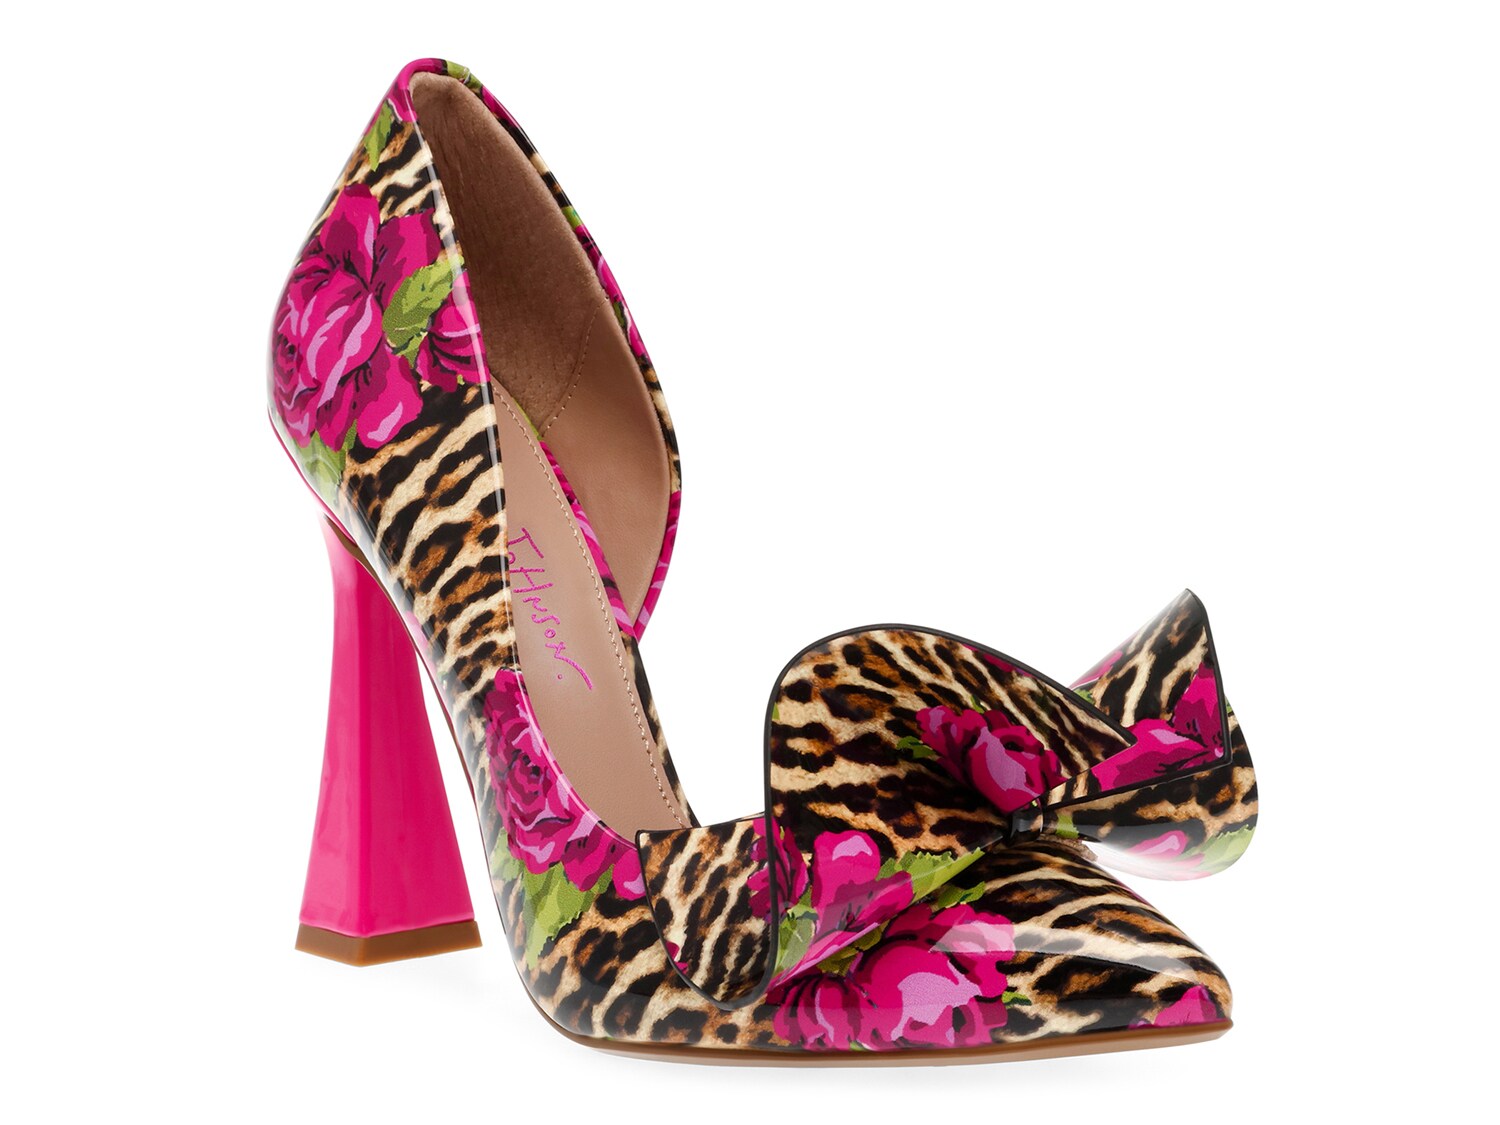 Туфли Betsey Johnson Nobble лодочки с леопардовым и цветочным принтом, разноцветный